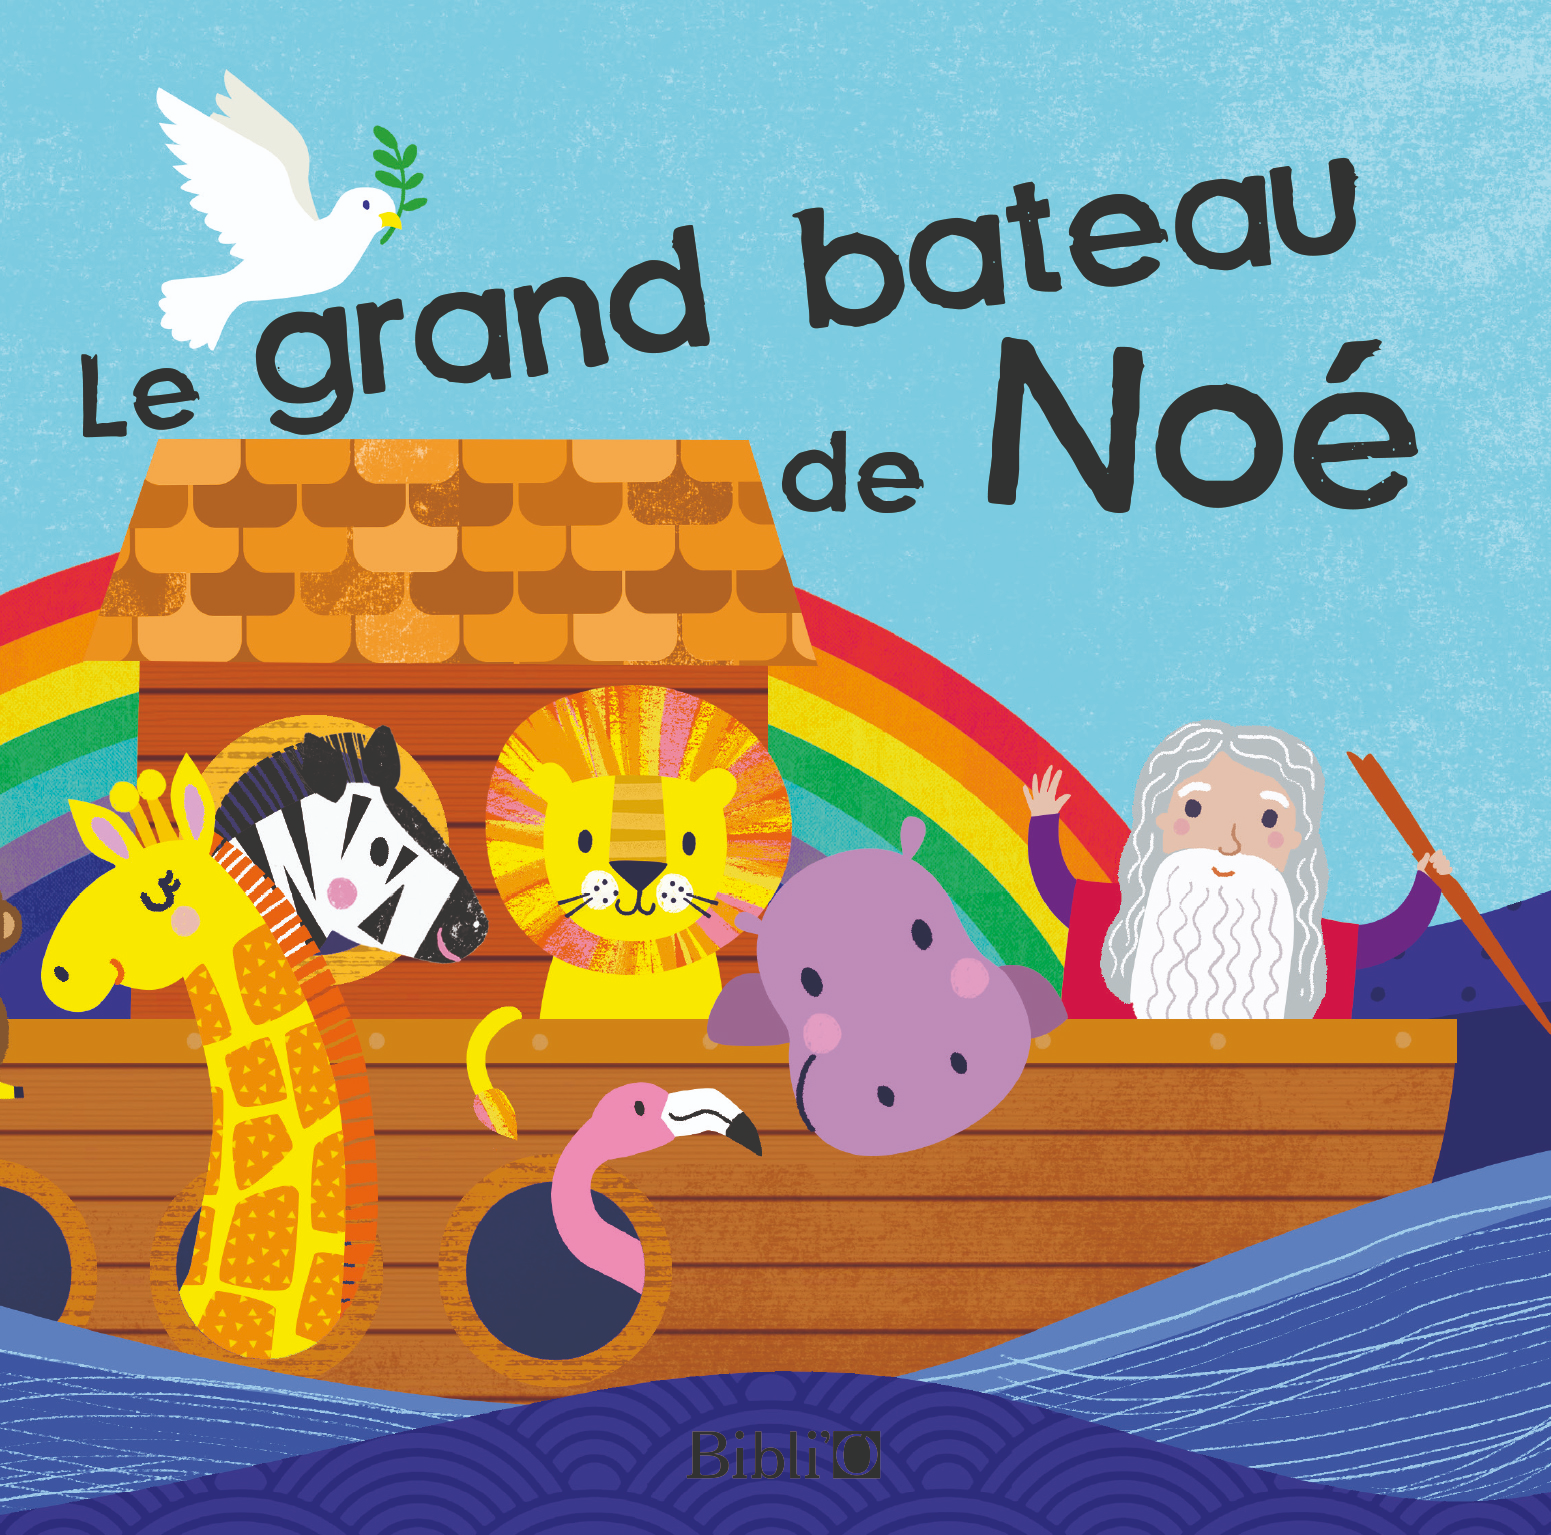 Grand Bateau de Noé (Le) - livre pour le bain